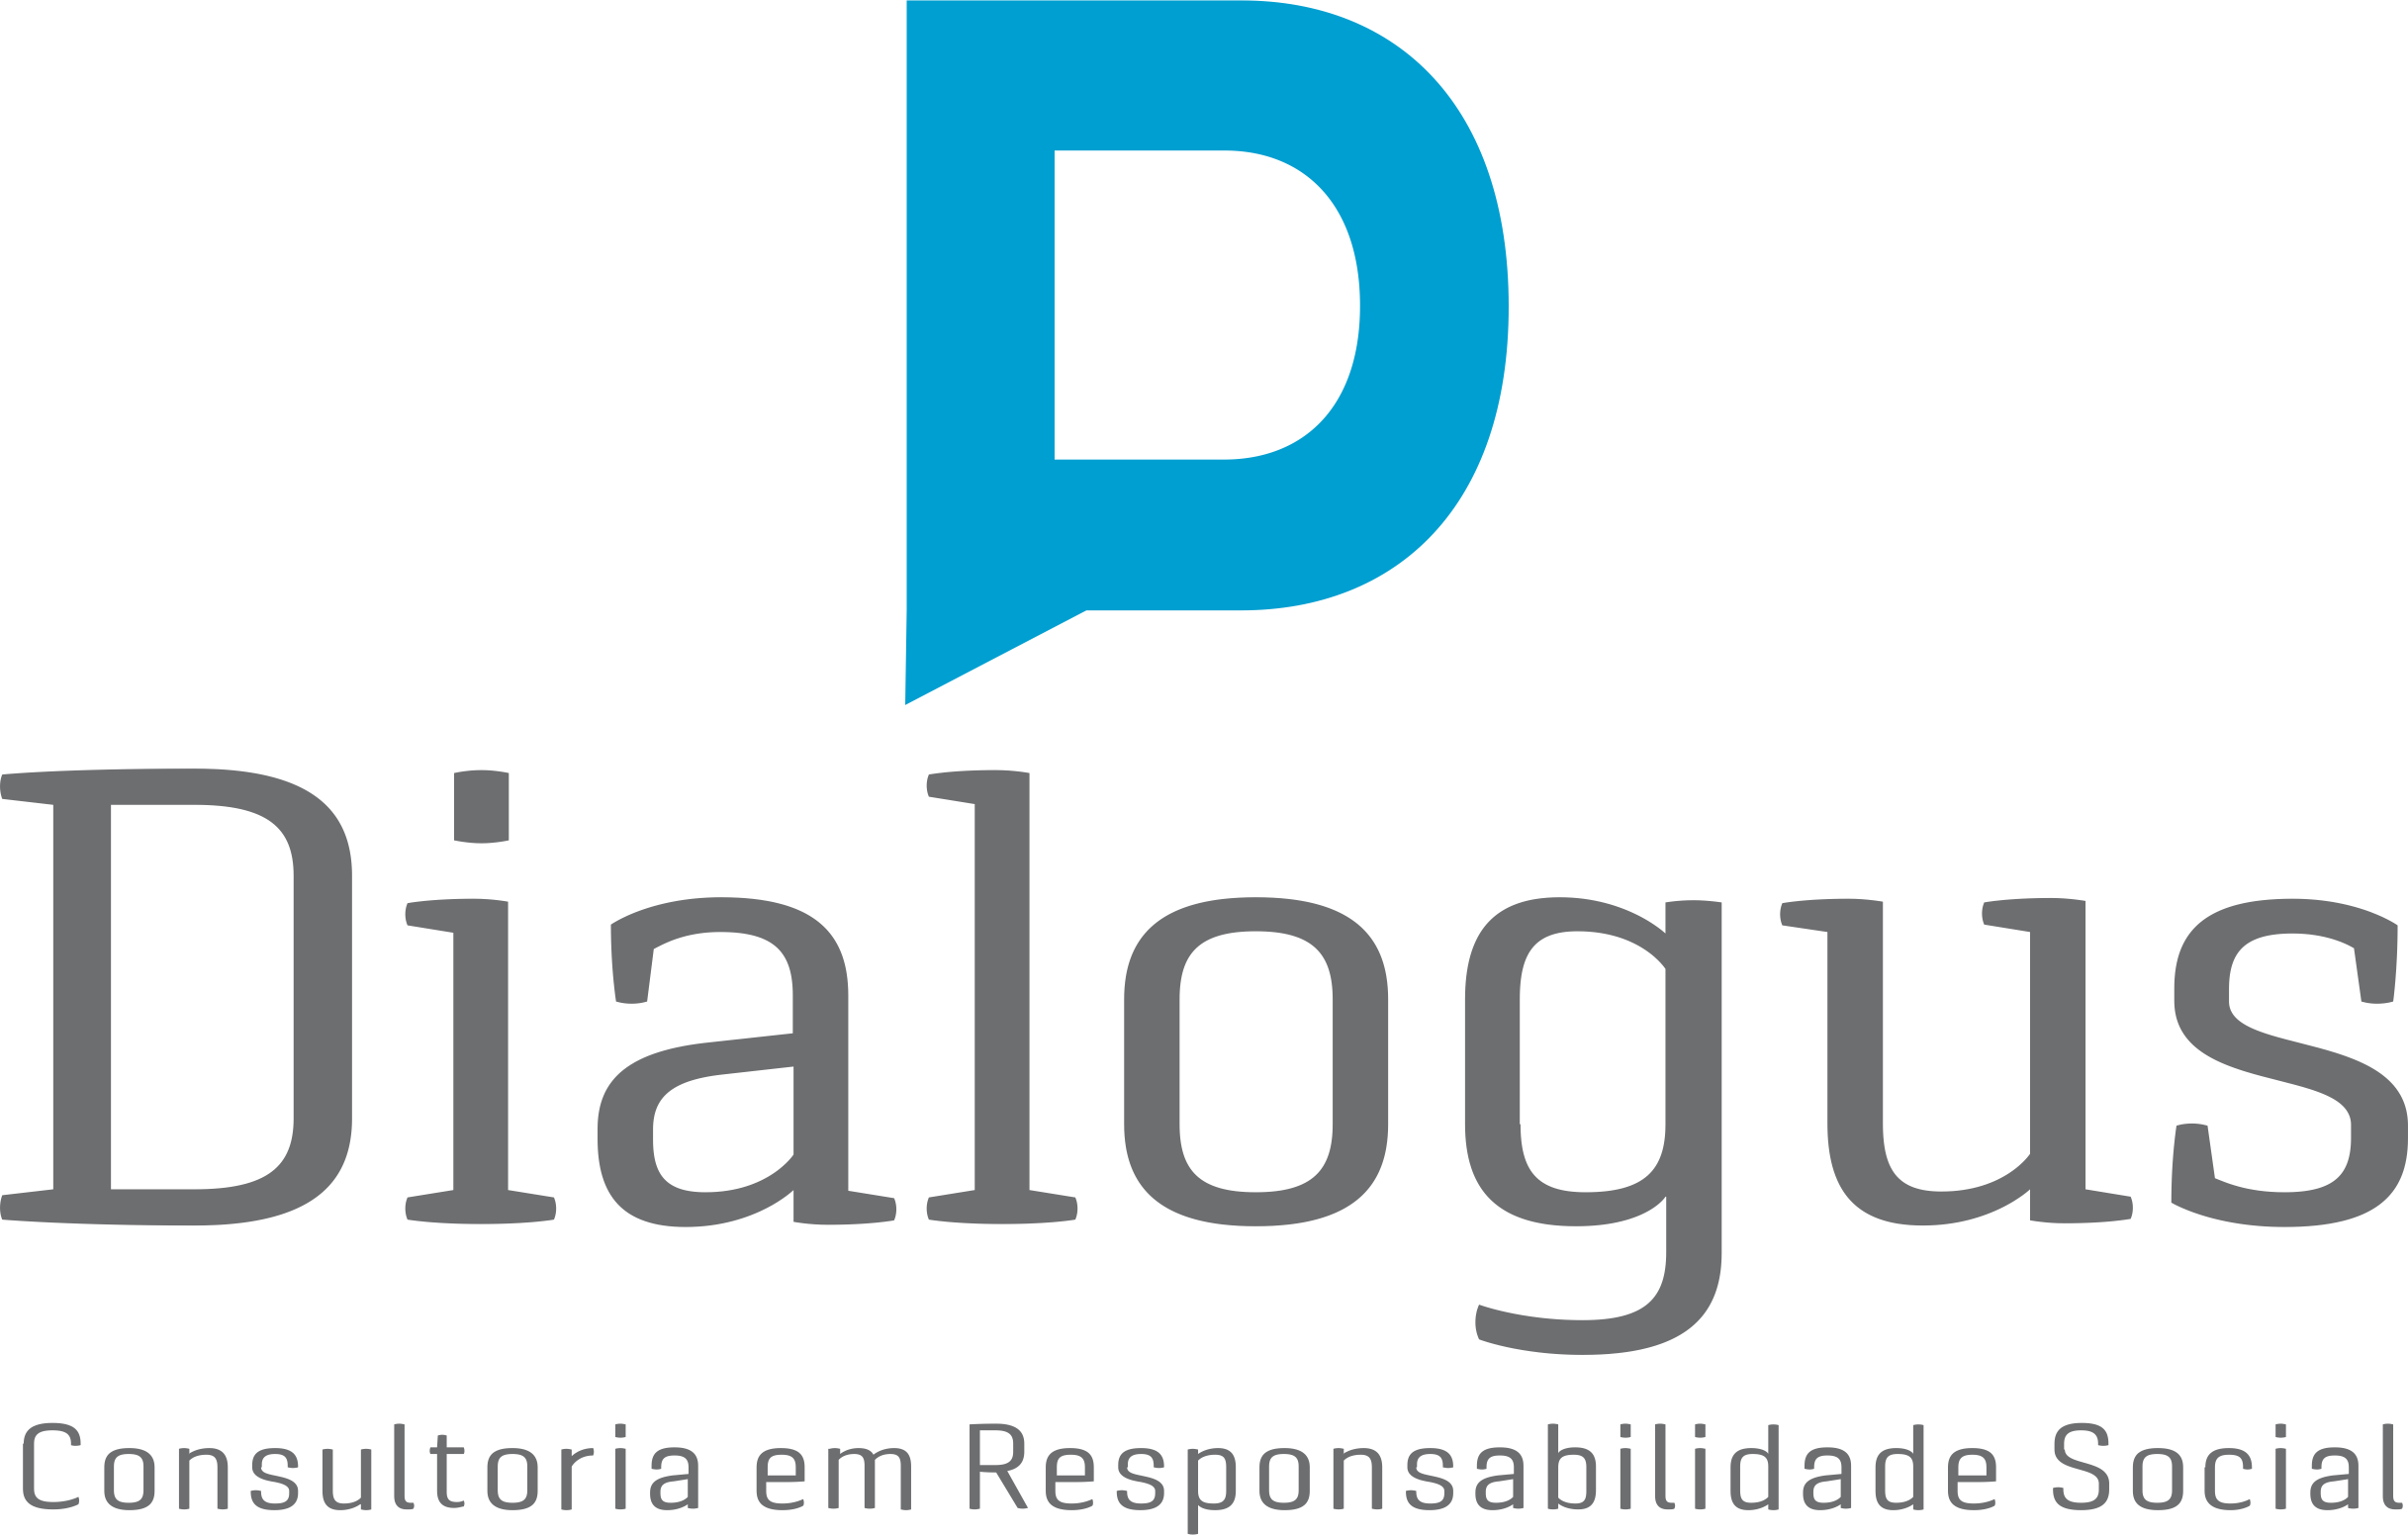 Dialogus Responsabilidade Social - Consultoria - ISP - Investimento Social Privado - Fortaleza/CE